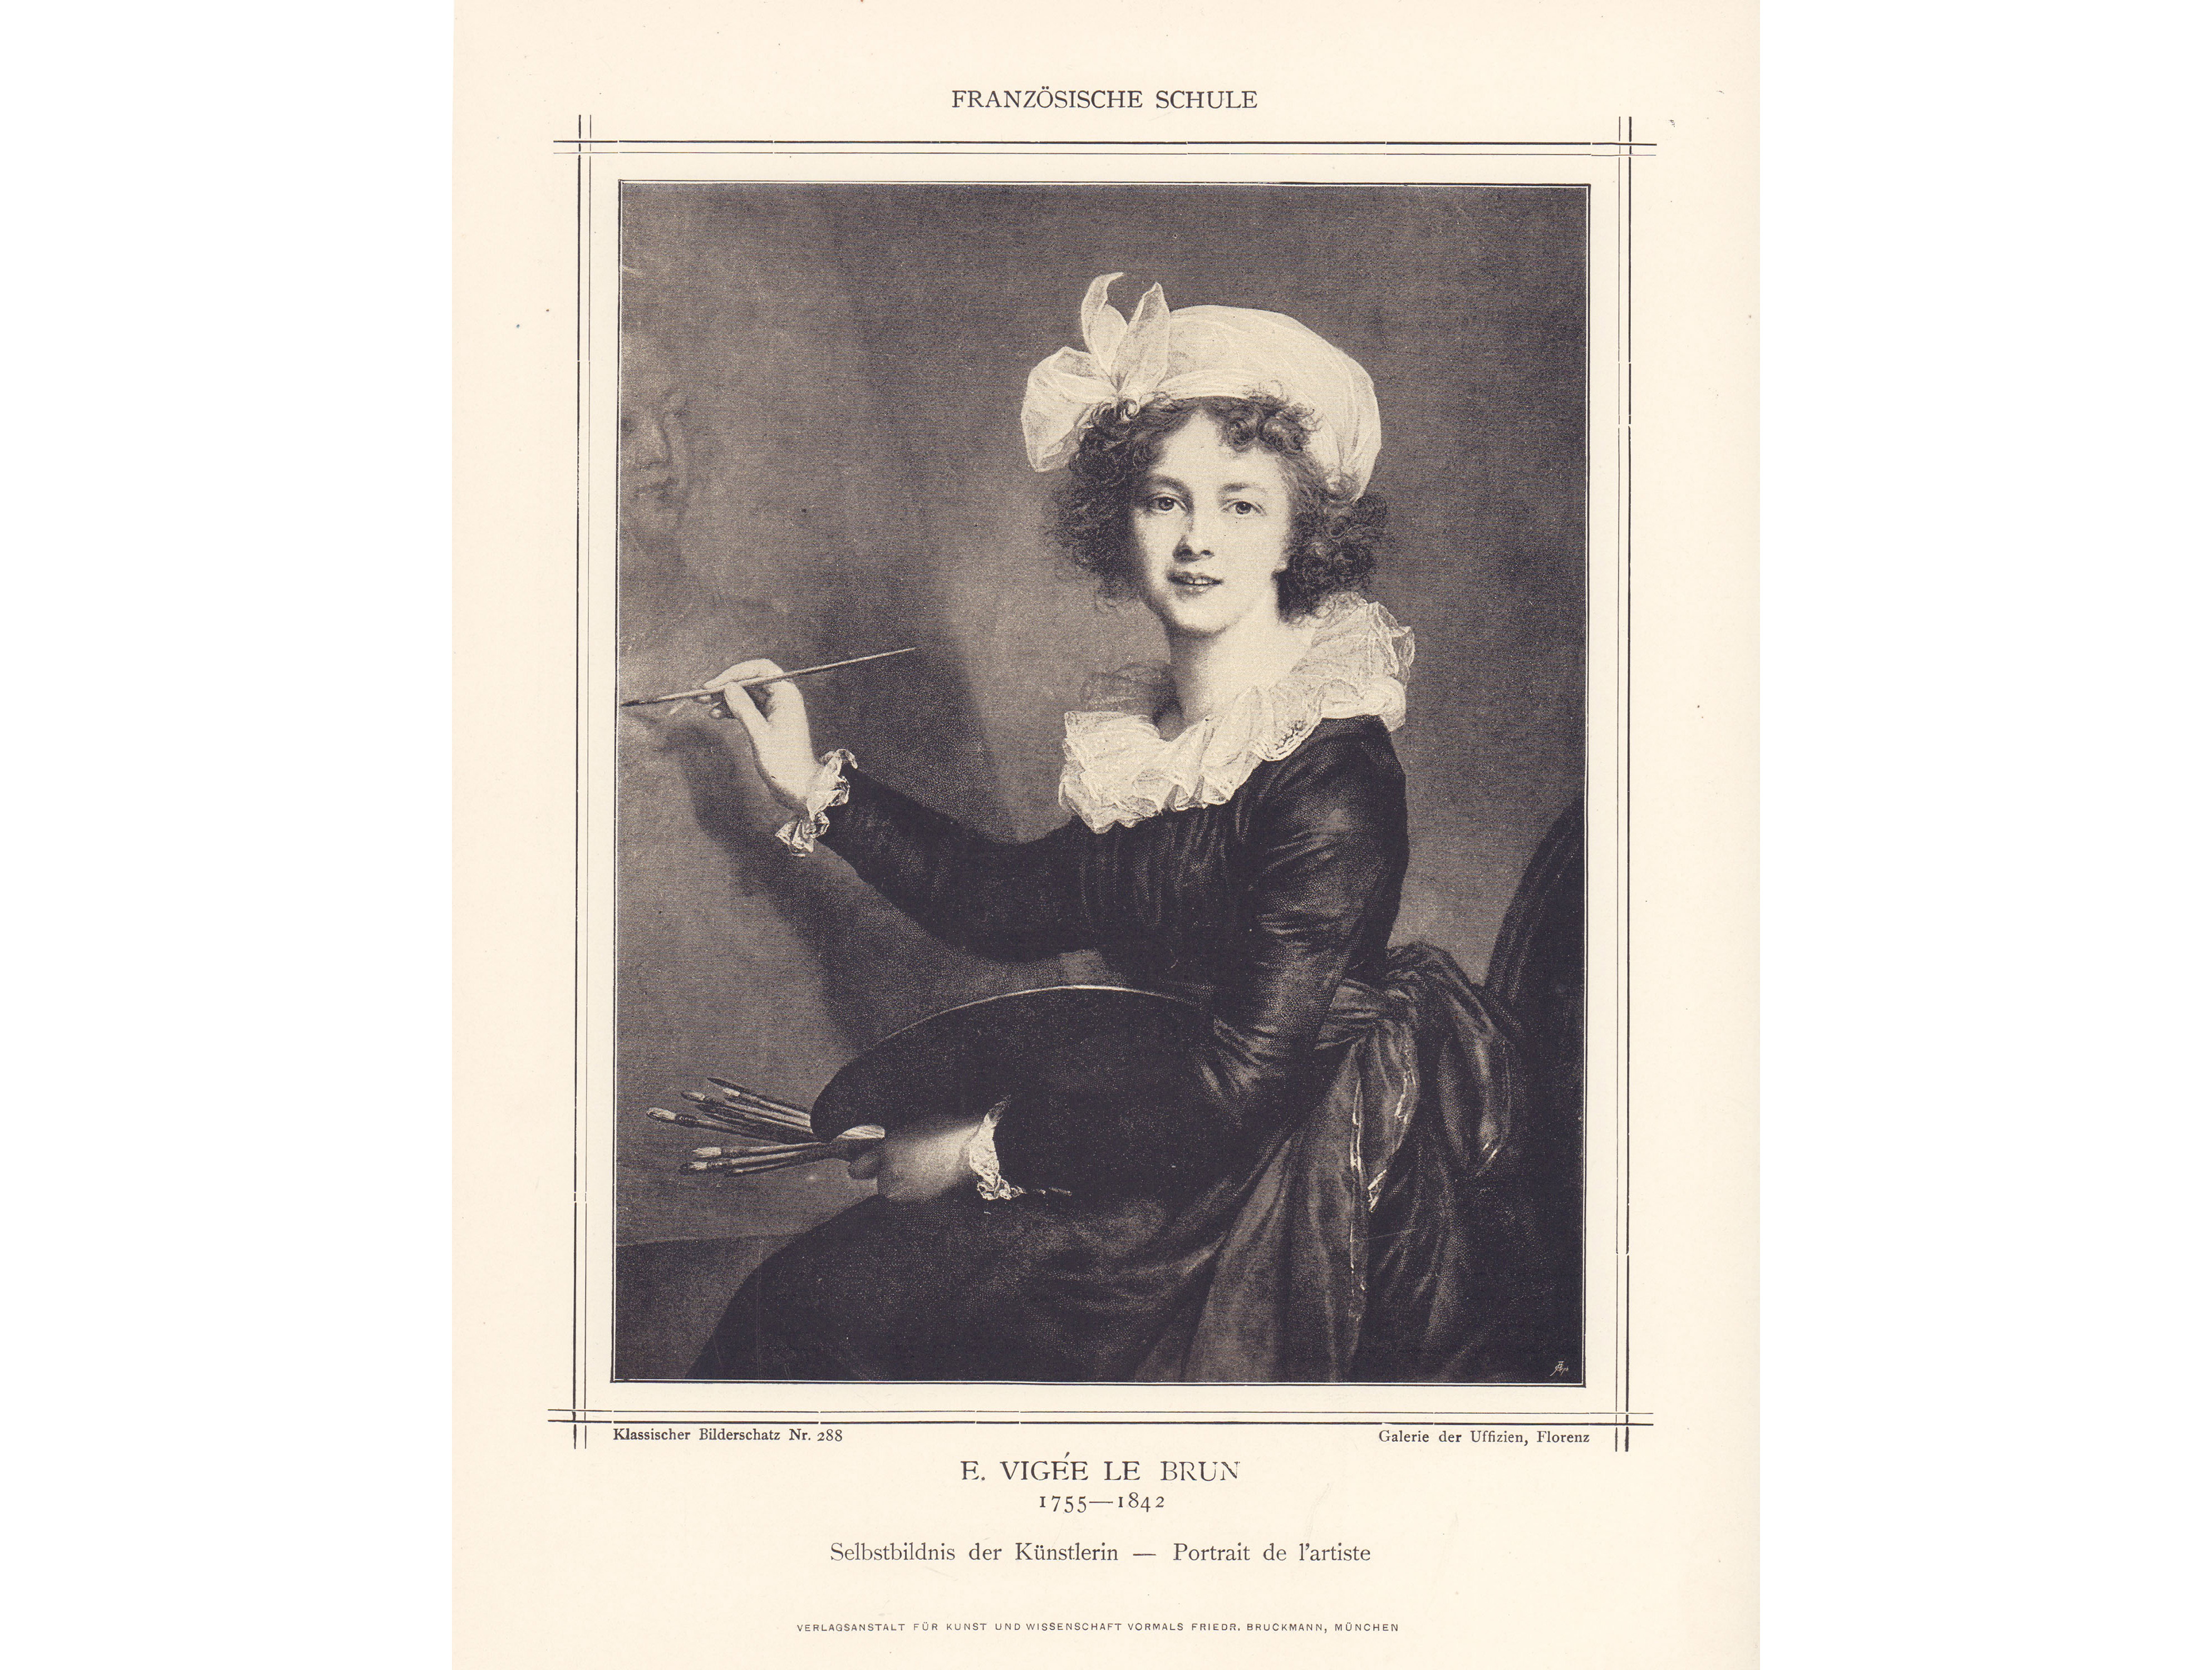 Fotogravur, E. Vigée le Brun, Selbstbildnis, Klassischer Bilderschatz Nr. 288, Inv.-Nr. 4300a, 30,5 x 23 cm